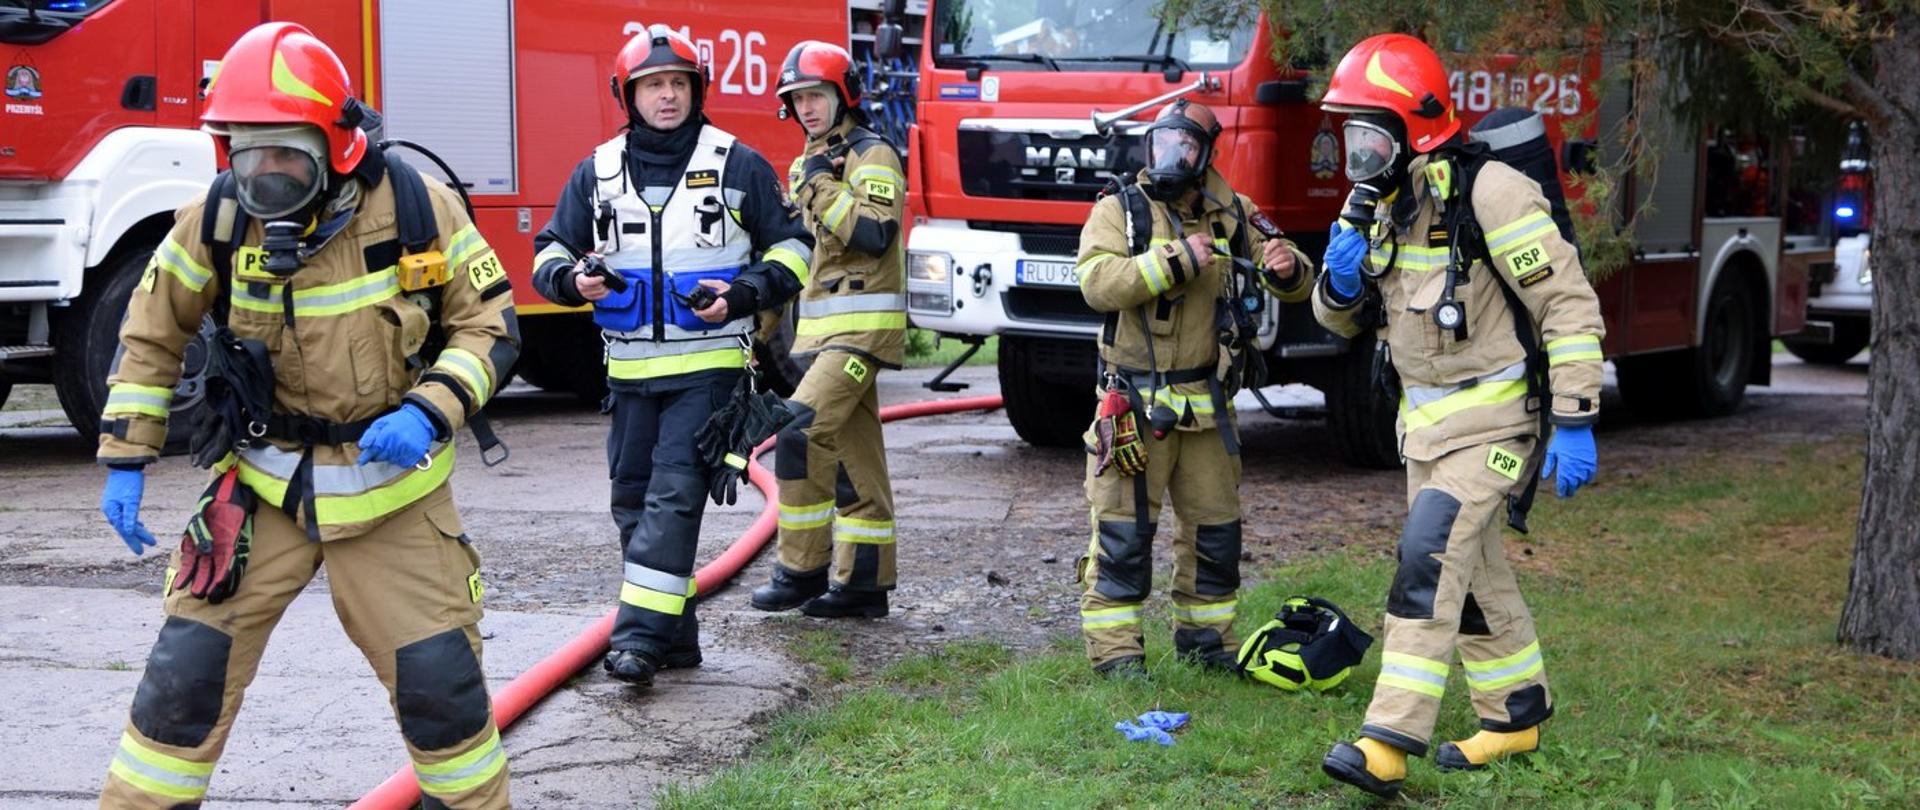 Zdjęcie zrobione na zewnątrz, podczas ćwiczeń. Pięciu strażaków ubrany w ubrania specjalne przygotowuje się do podjęcia działań ratowniczo-gaśniczych. W tle samochody ratowniczo-gaśnicze